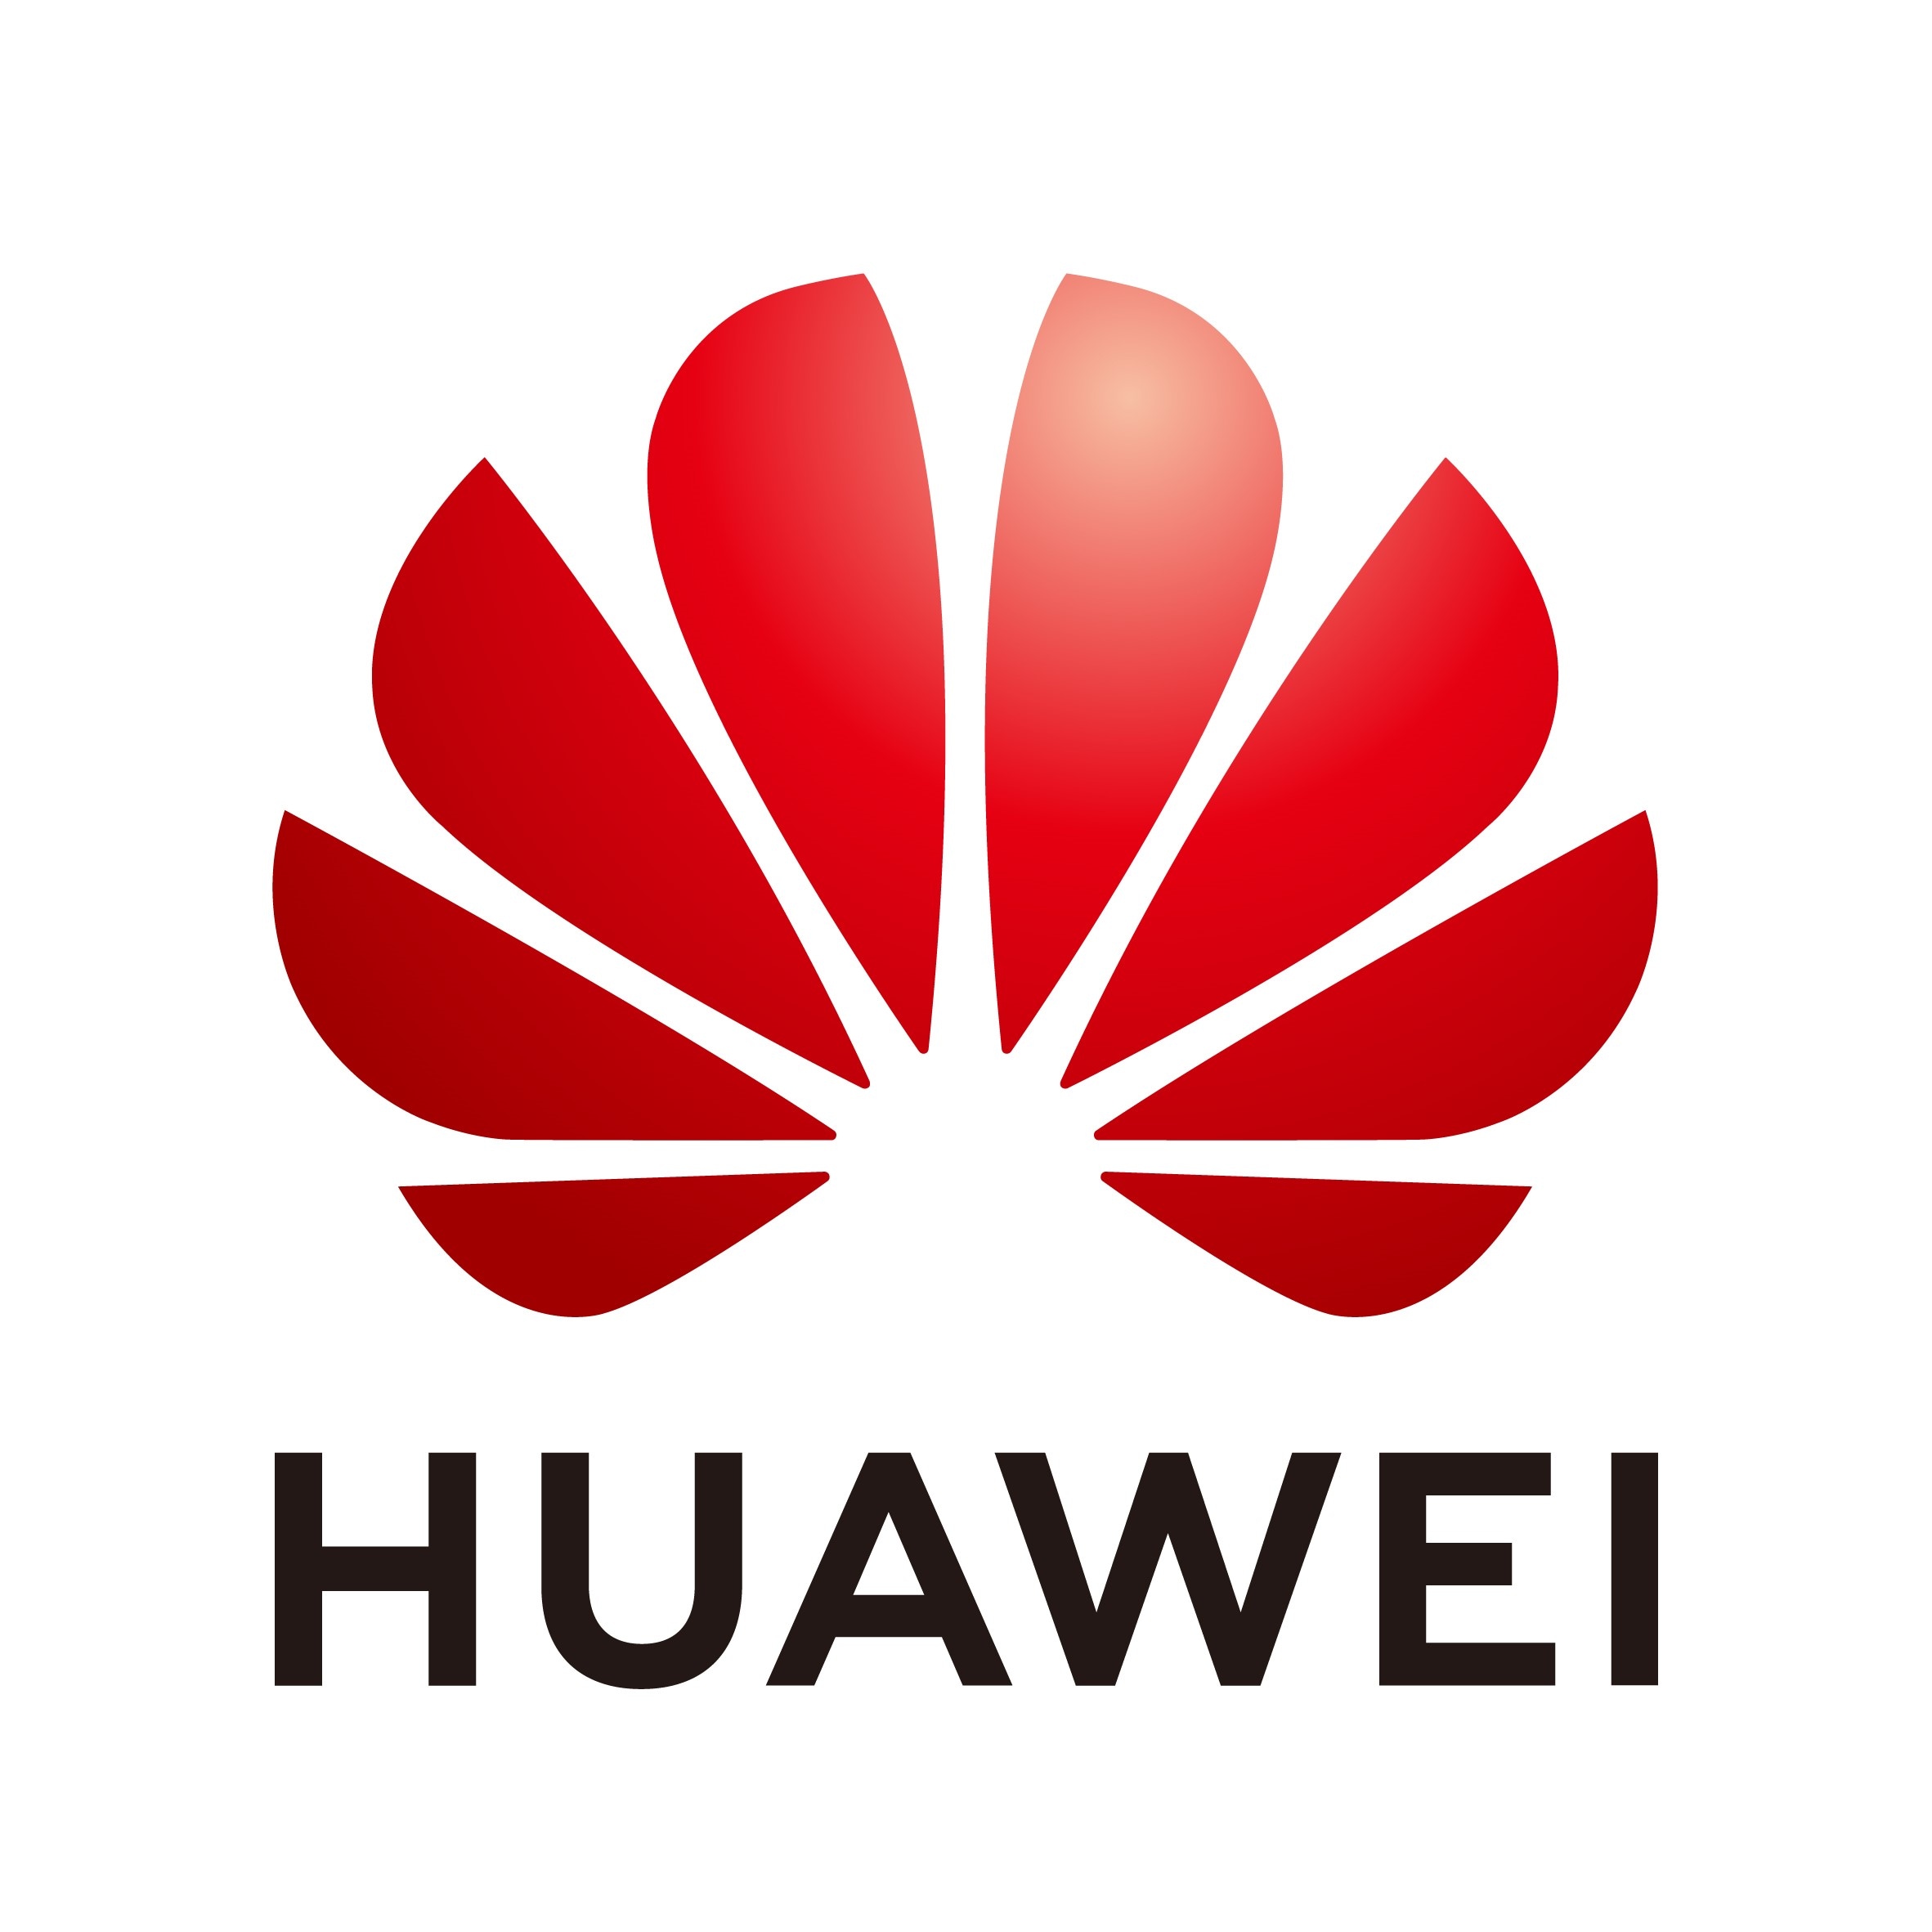 , Meine Enttäuschung über Huawei